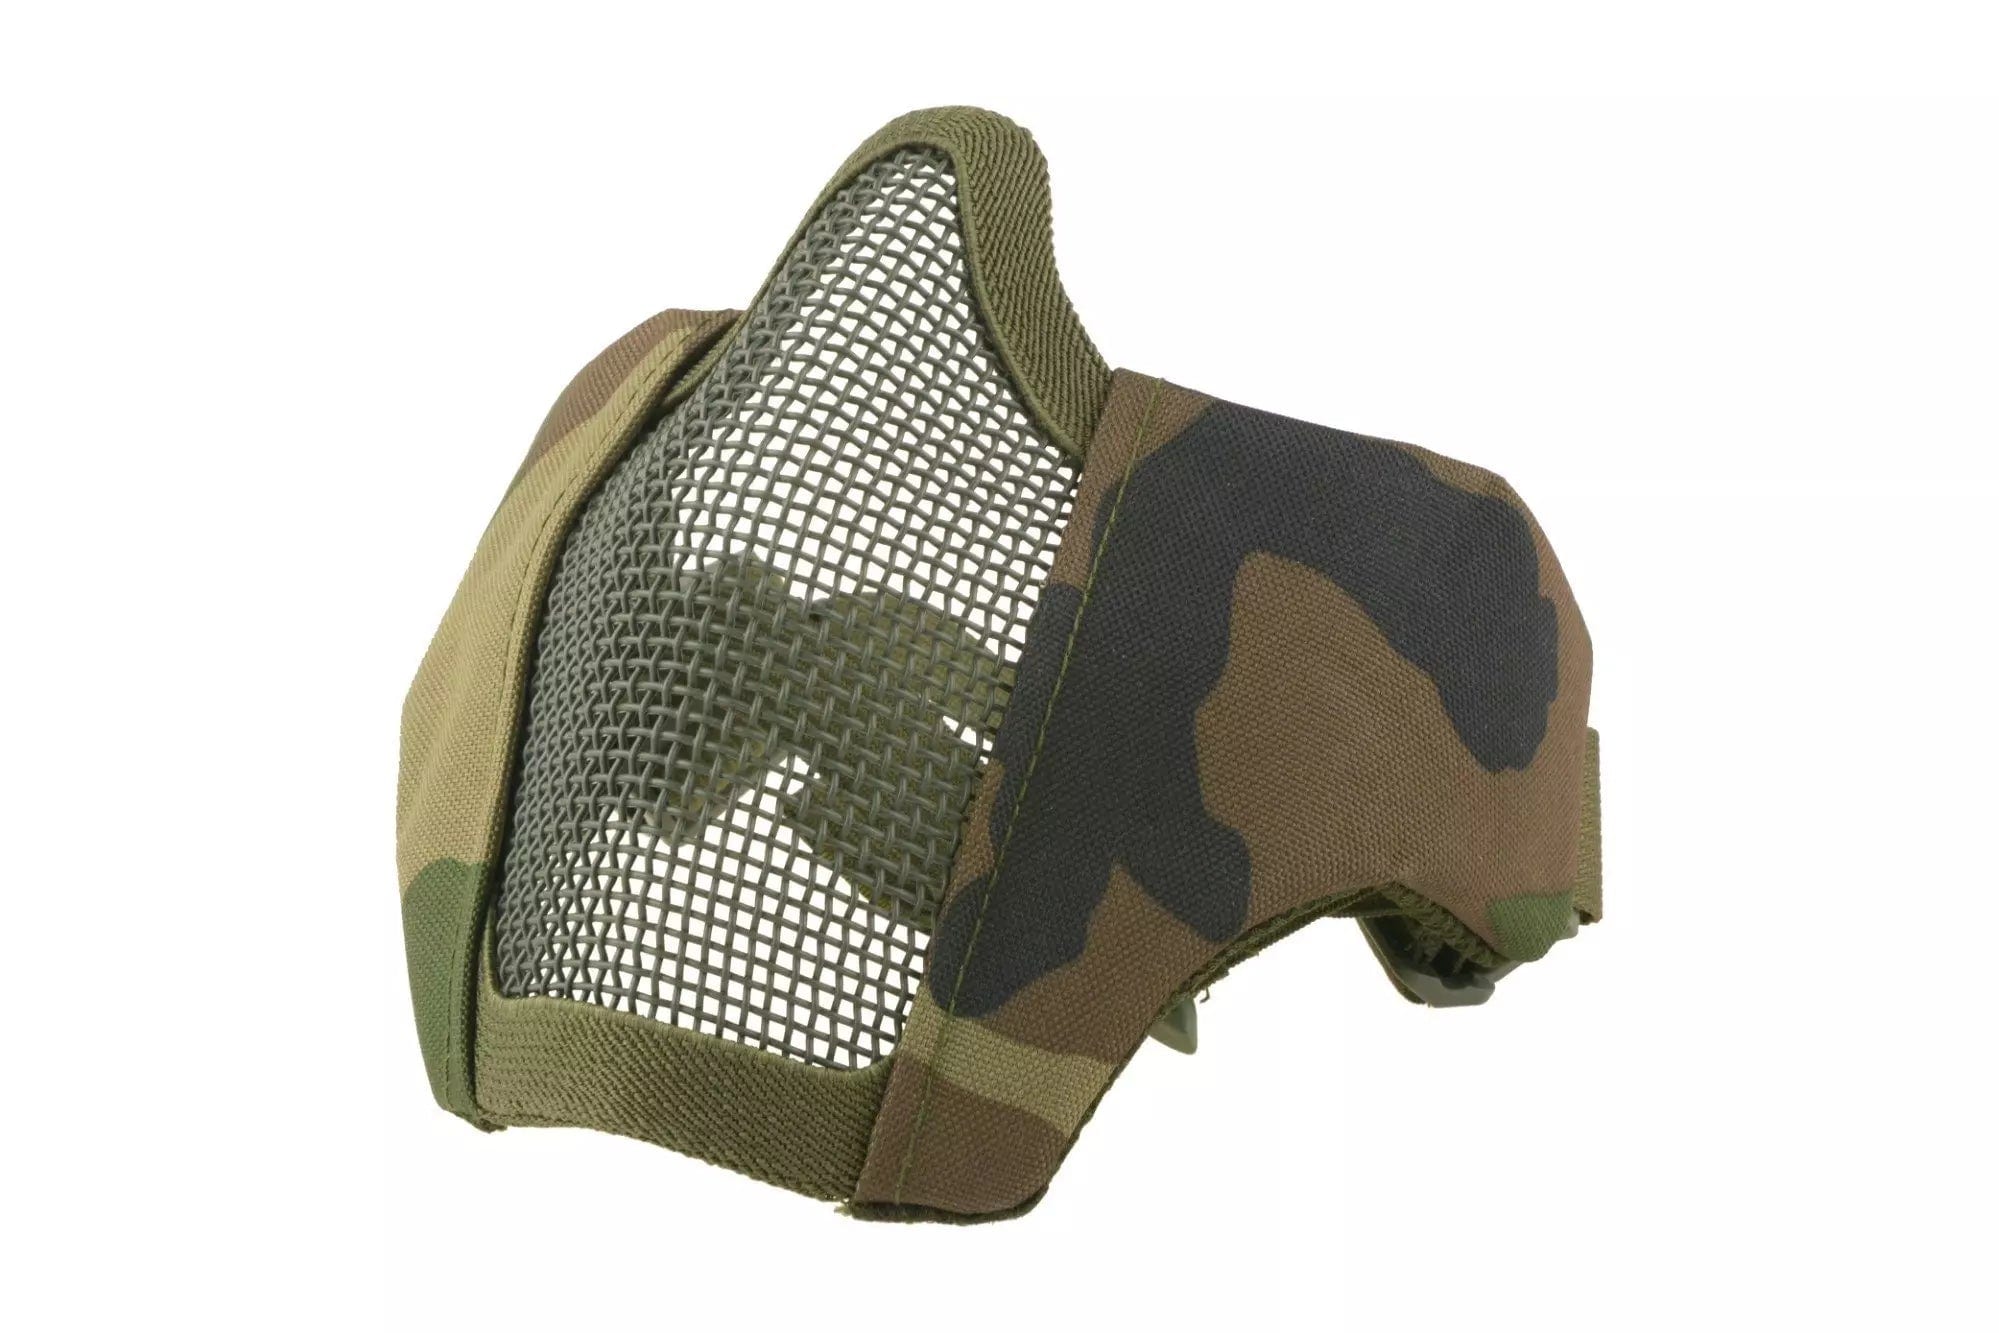 Stalker Evo Mask with Mount for FAST Helmets - Woodland